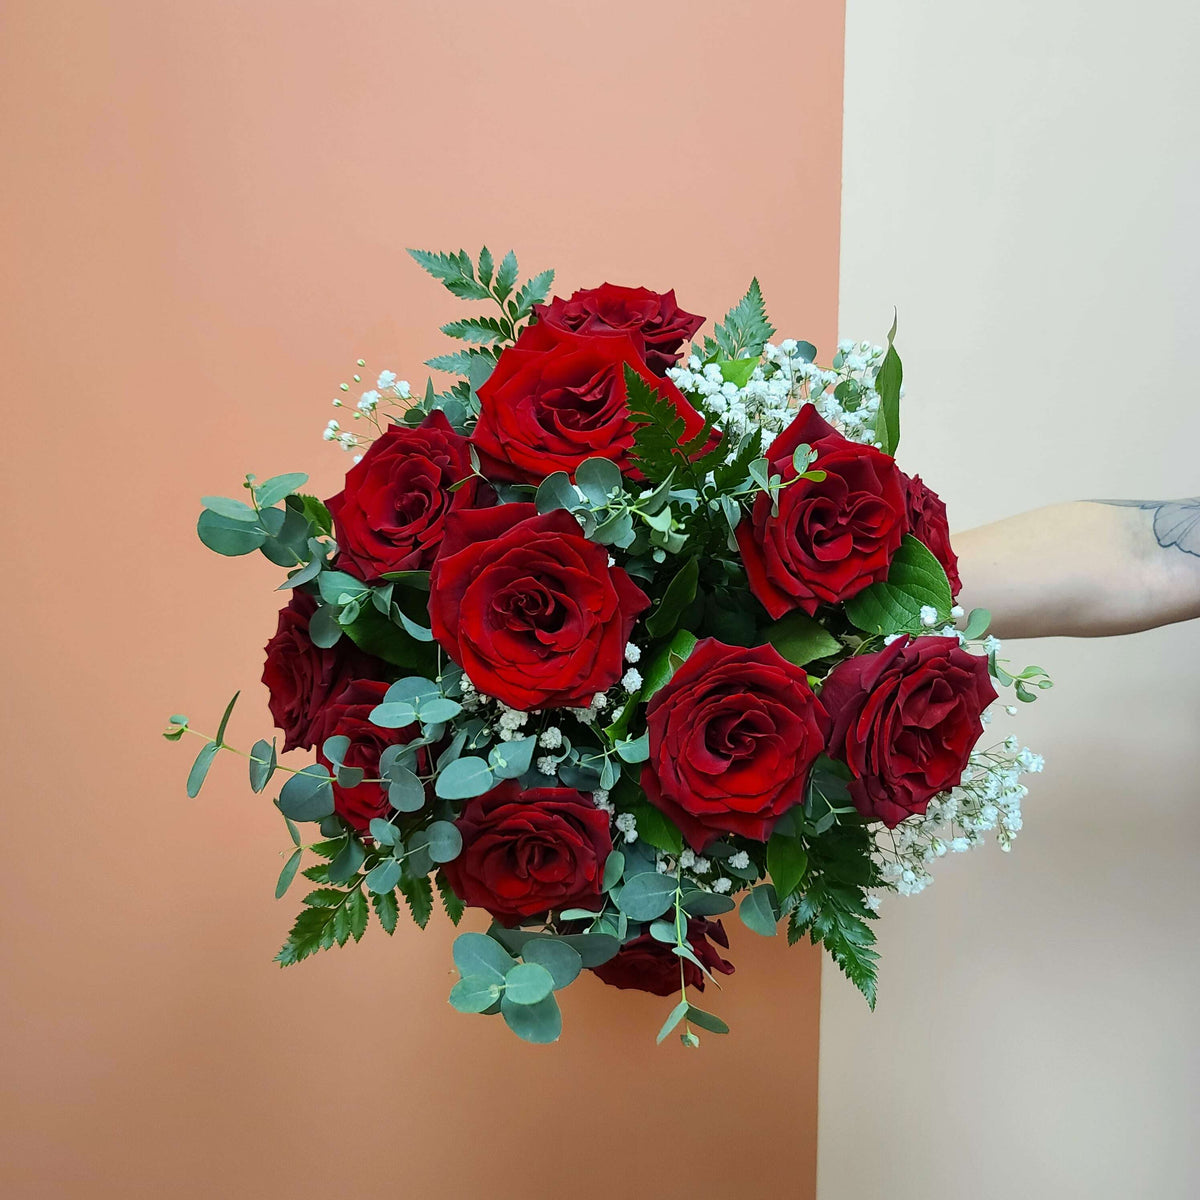 1 Dozen Rose Bouquet_Flower Arrangement_Floral Fixx Design Studio_The Floral Fixx